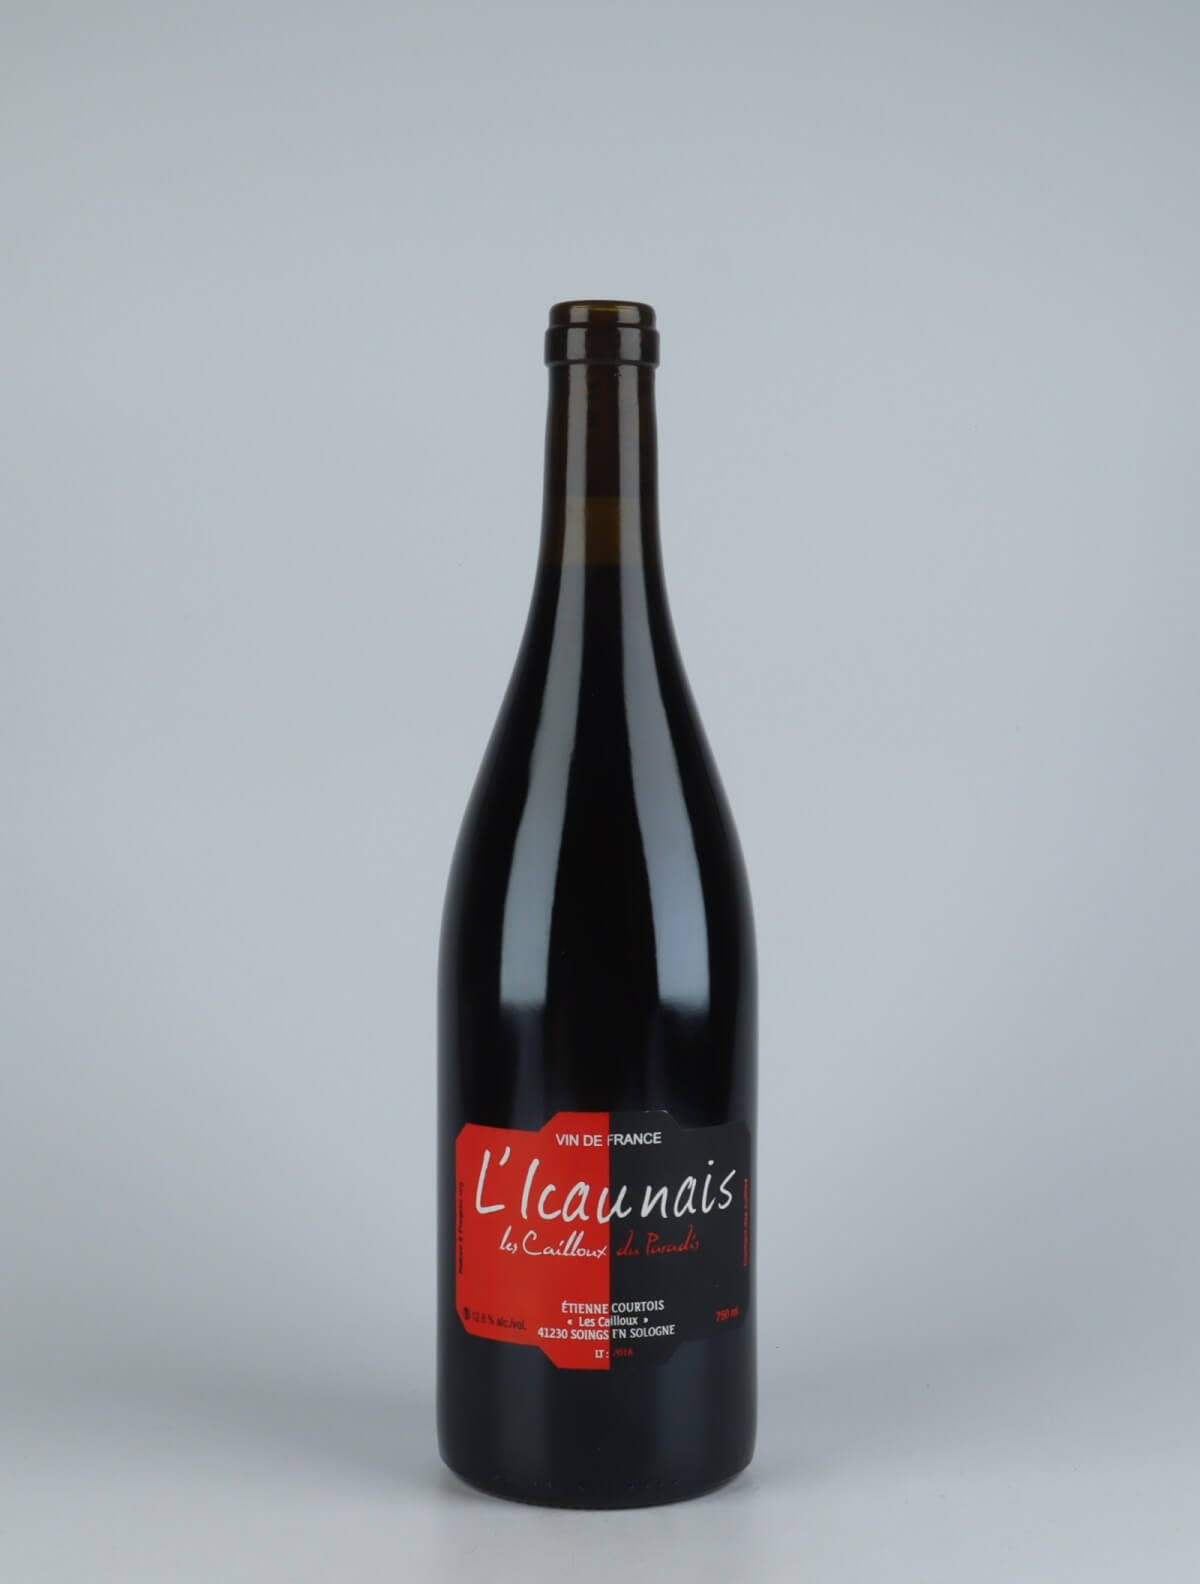 En flaske 2018 L'Icaunais Rødvin fra Etienne Courtois, Loire i Frankrig